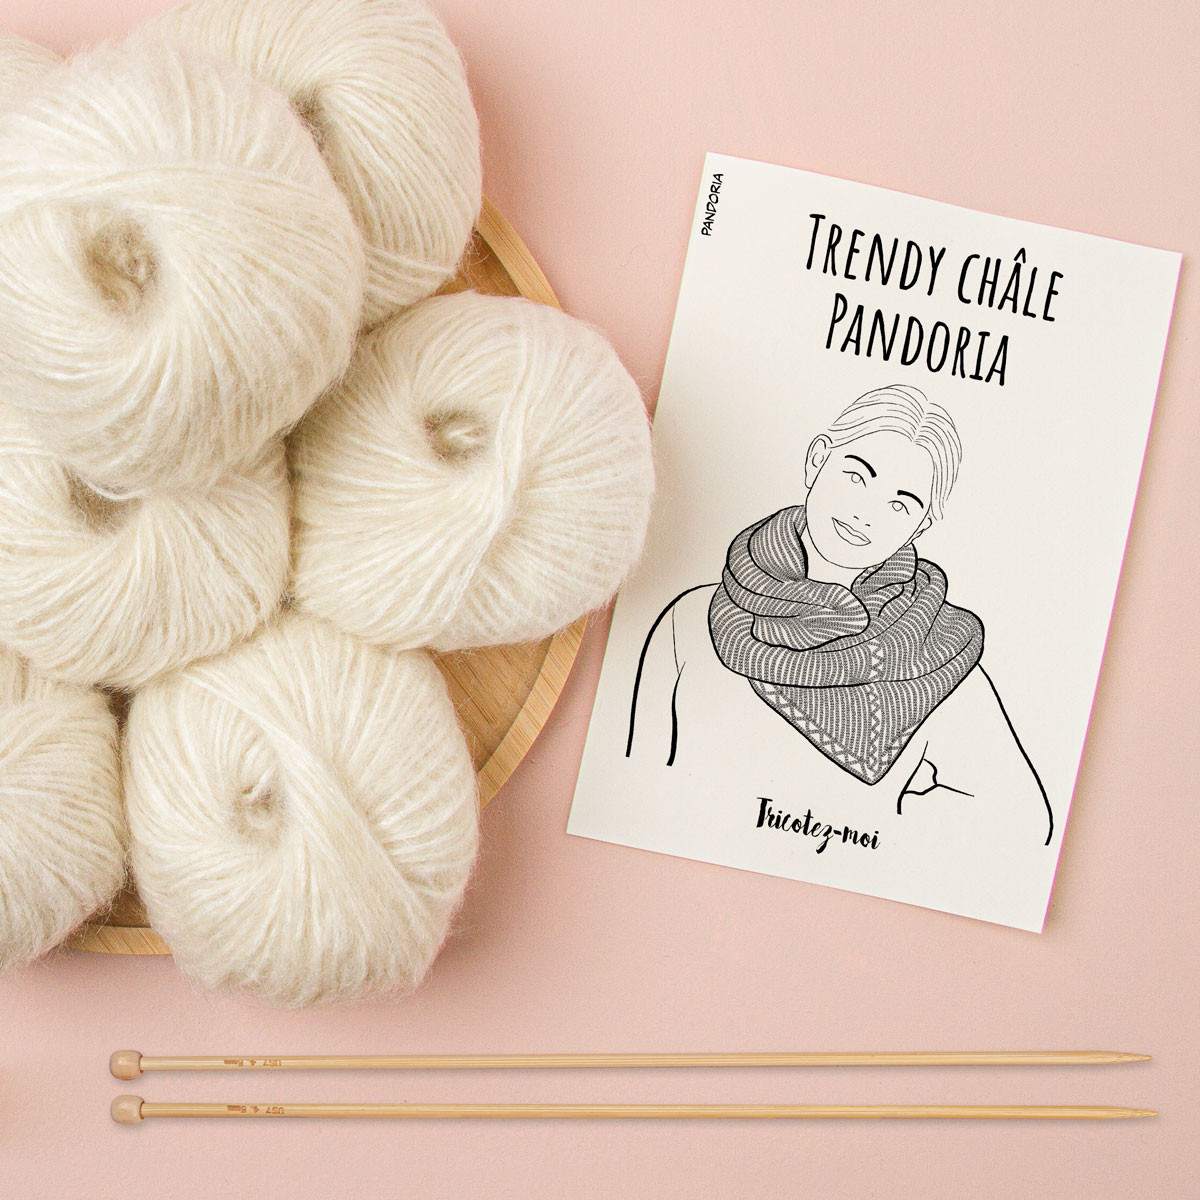 Trendy châle Pandoria à tricoter